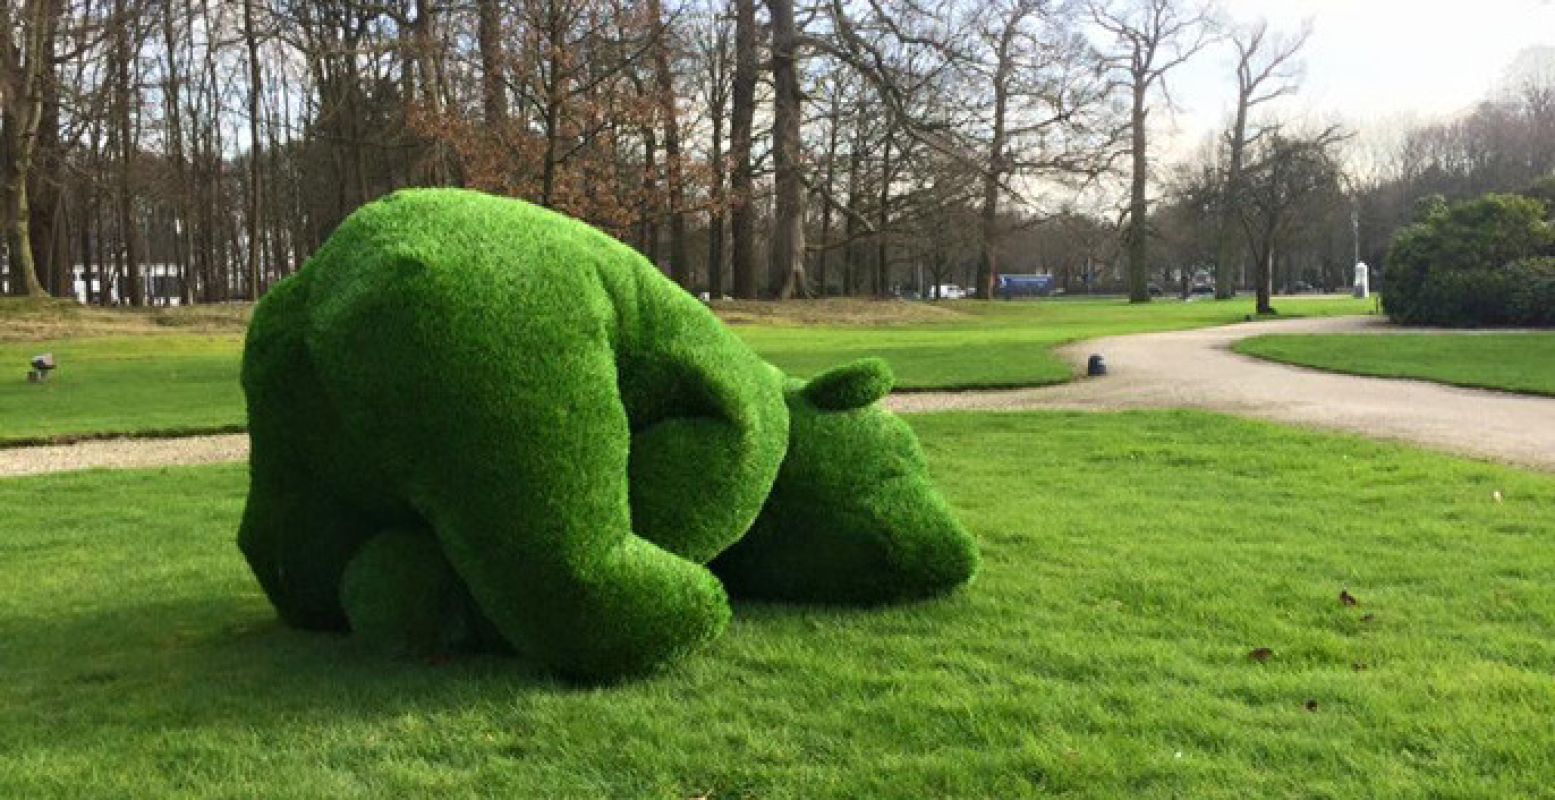 Maak kennis met het kunstwerk Grazzly: een beer van gras. Foto: Paleis Soestdijk.